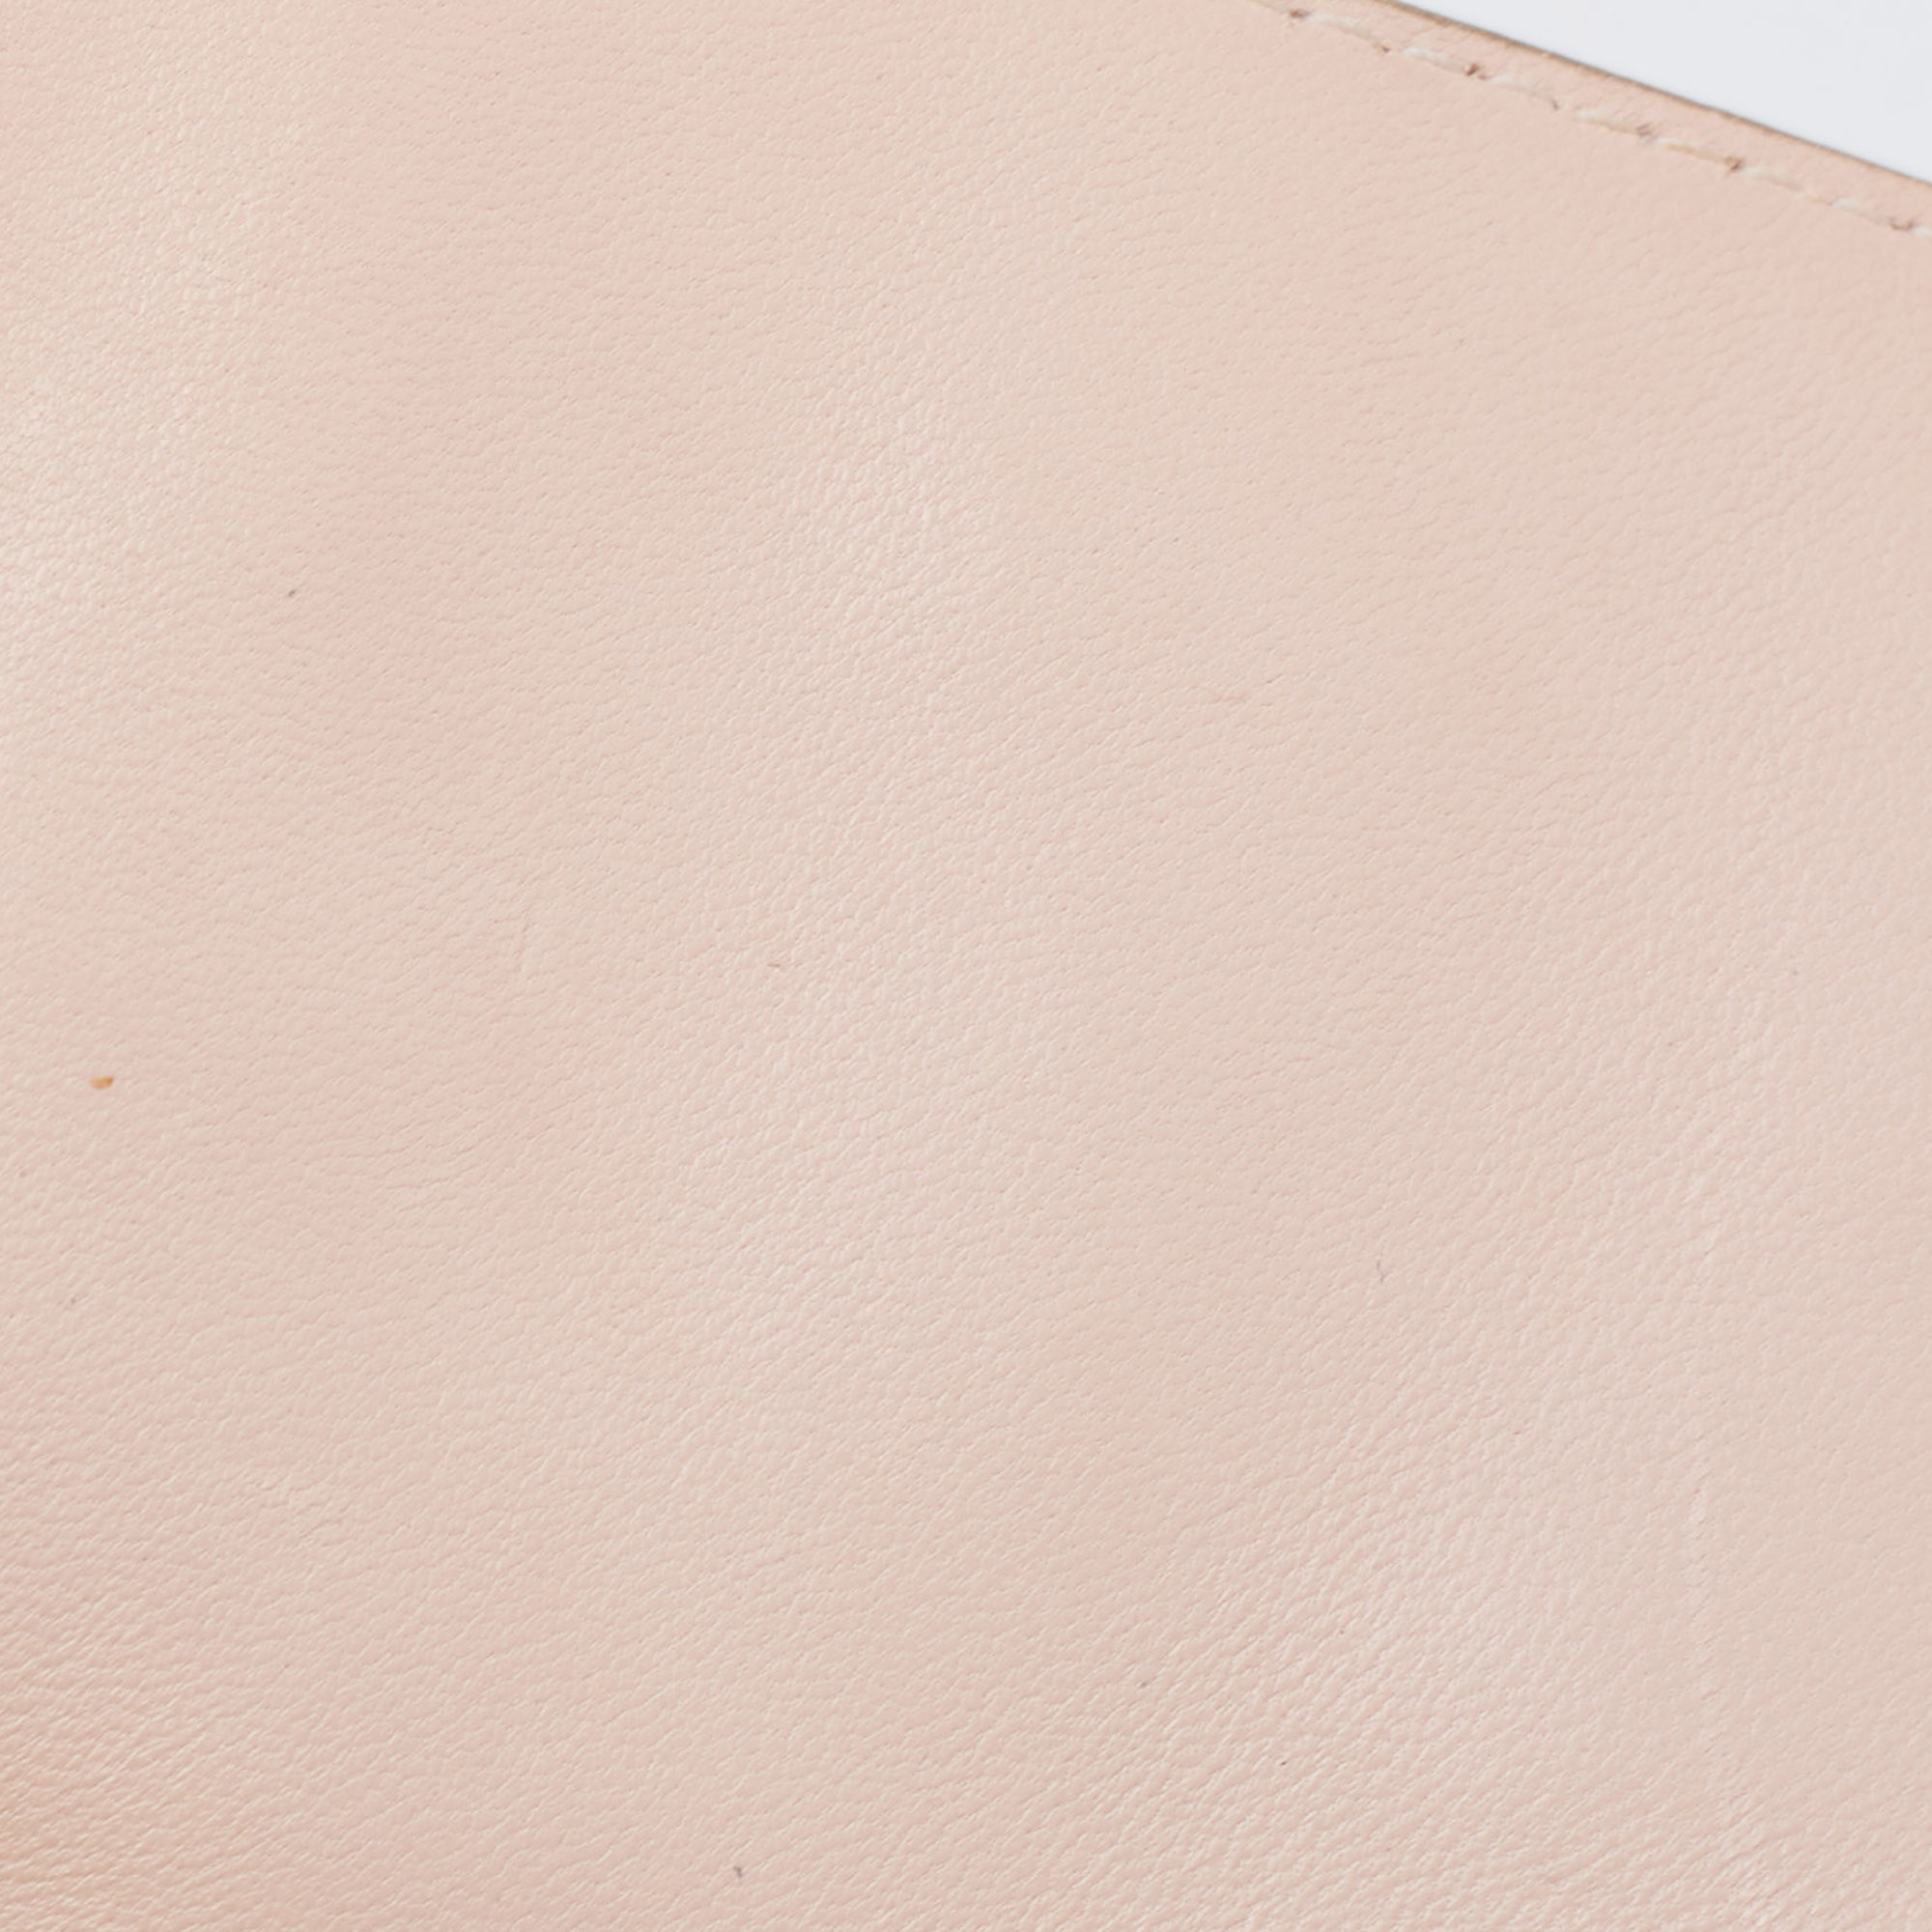 Chloe Light Pink Leather Medium Crystals Embellished Elsie Shoulder Bag